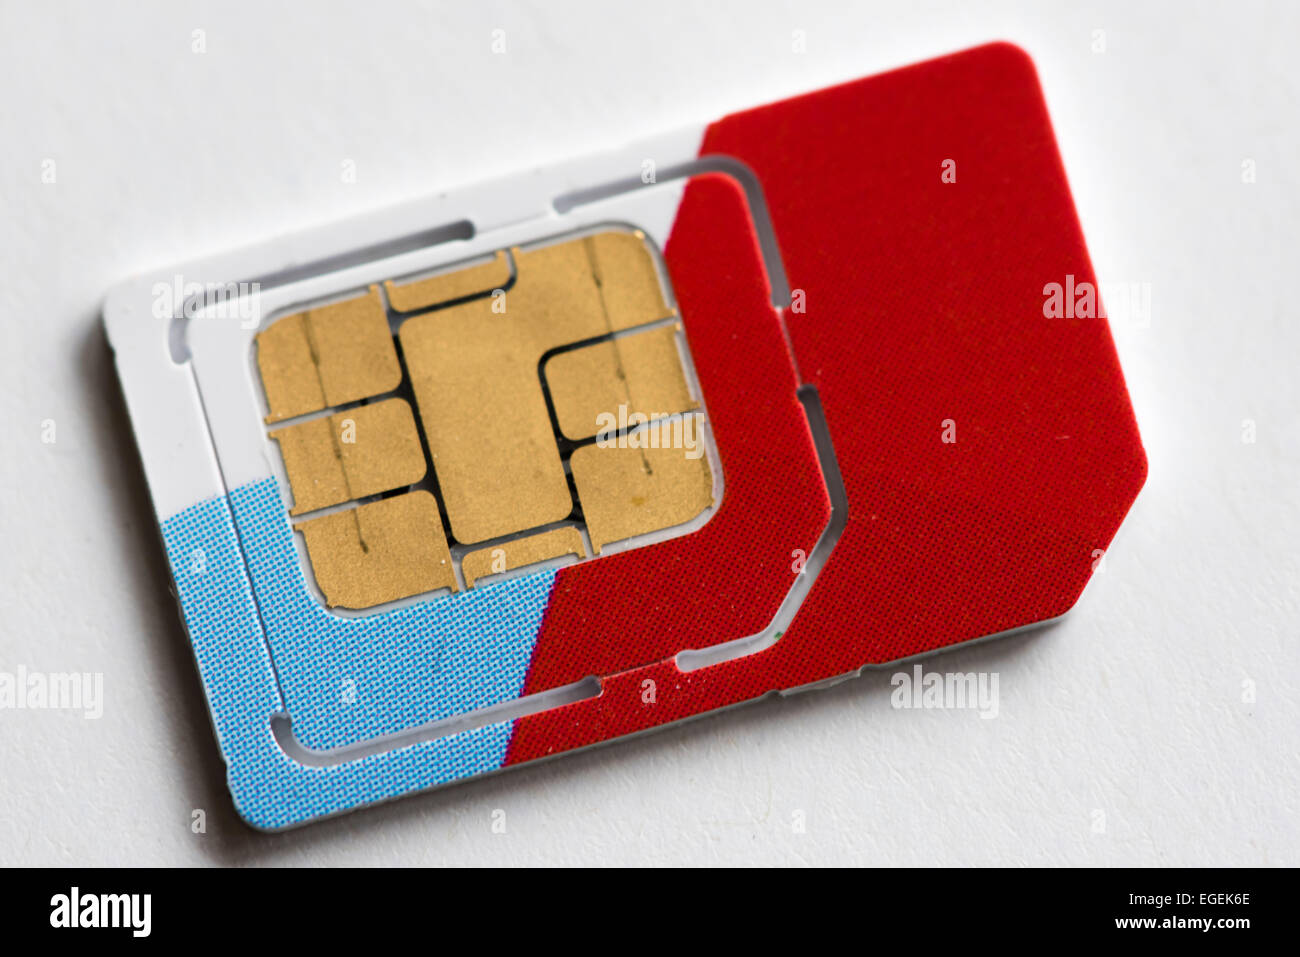 Nahaufnahme von einer SIM-Karte (Subscriber Identity Module Karte) für Mobiltelefone. Stockfoto